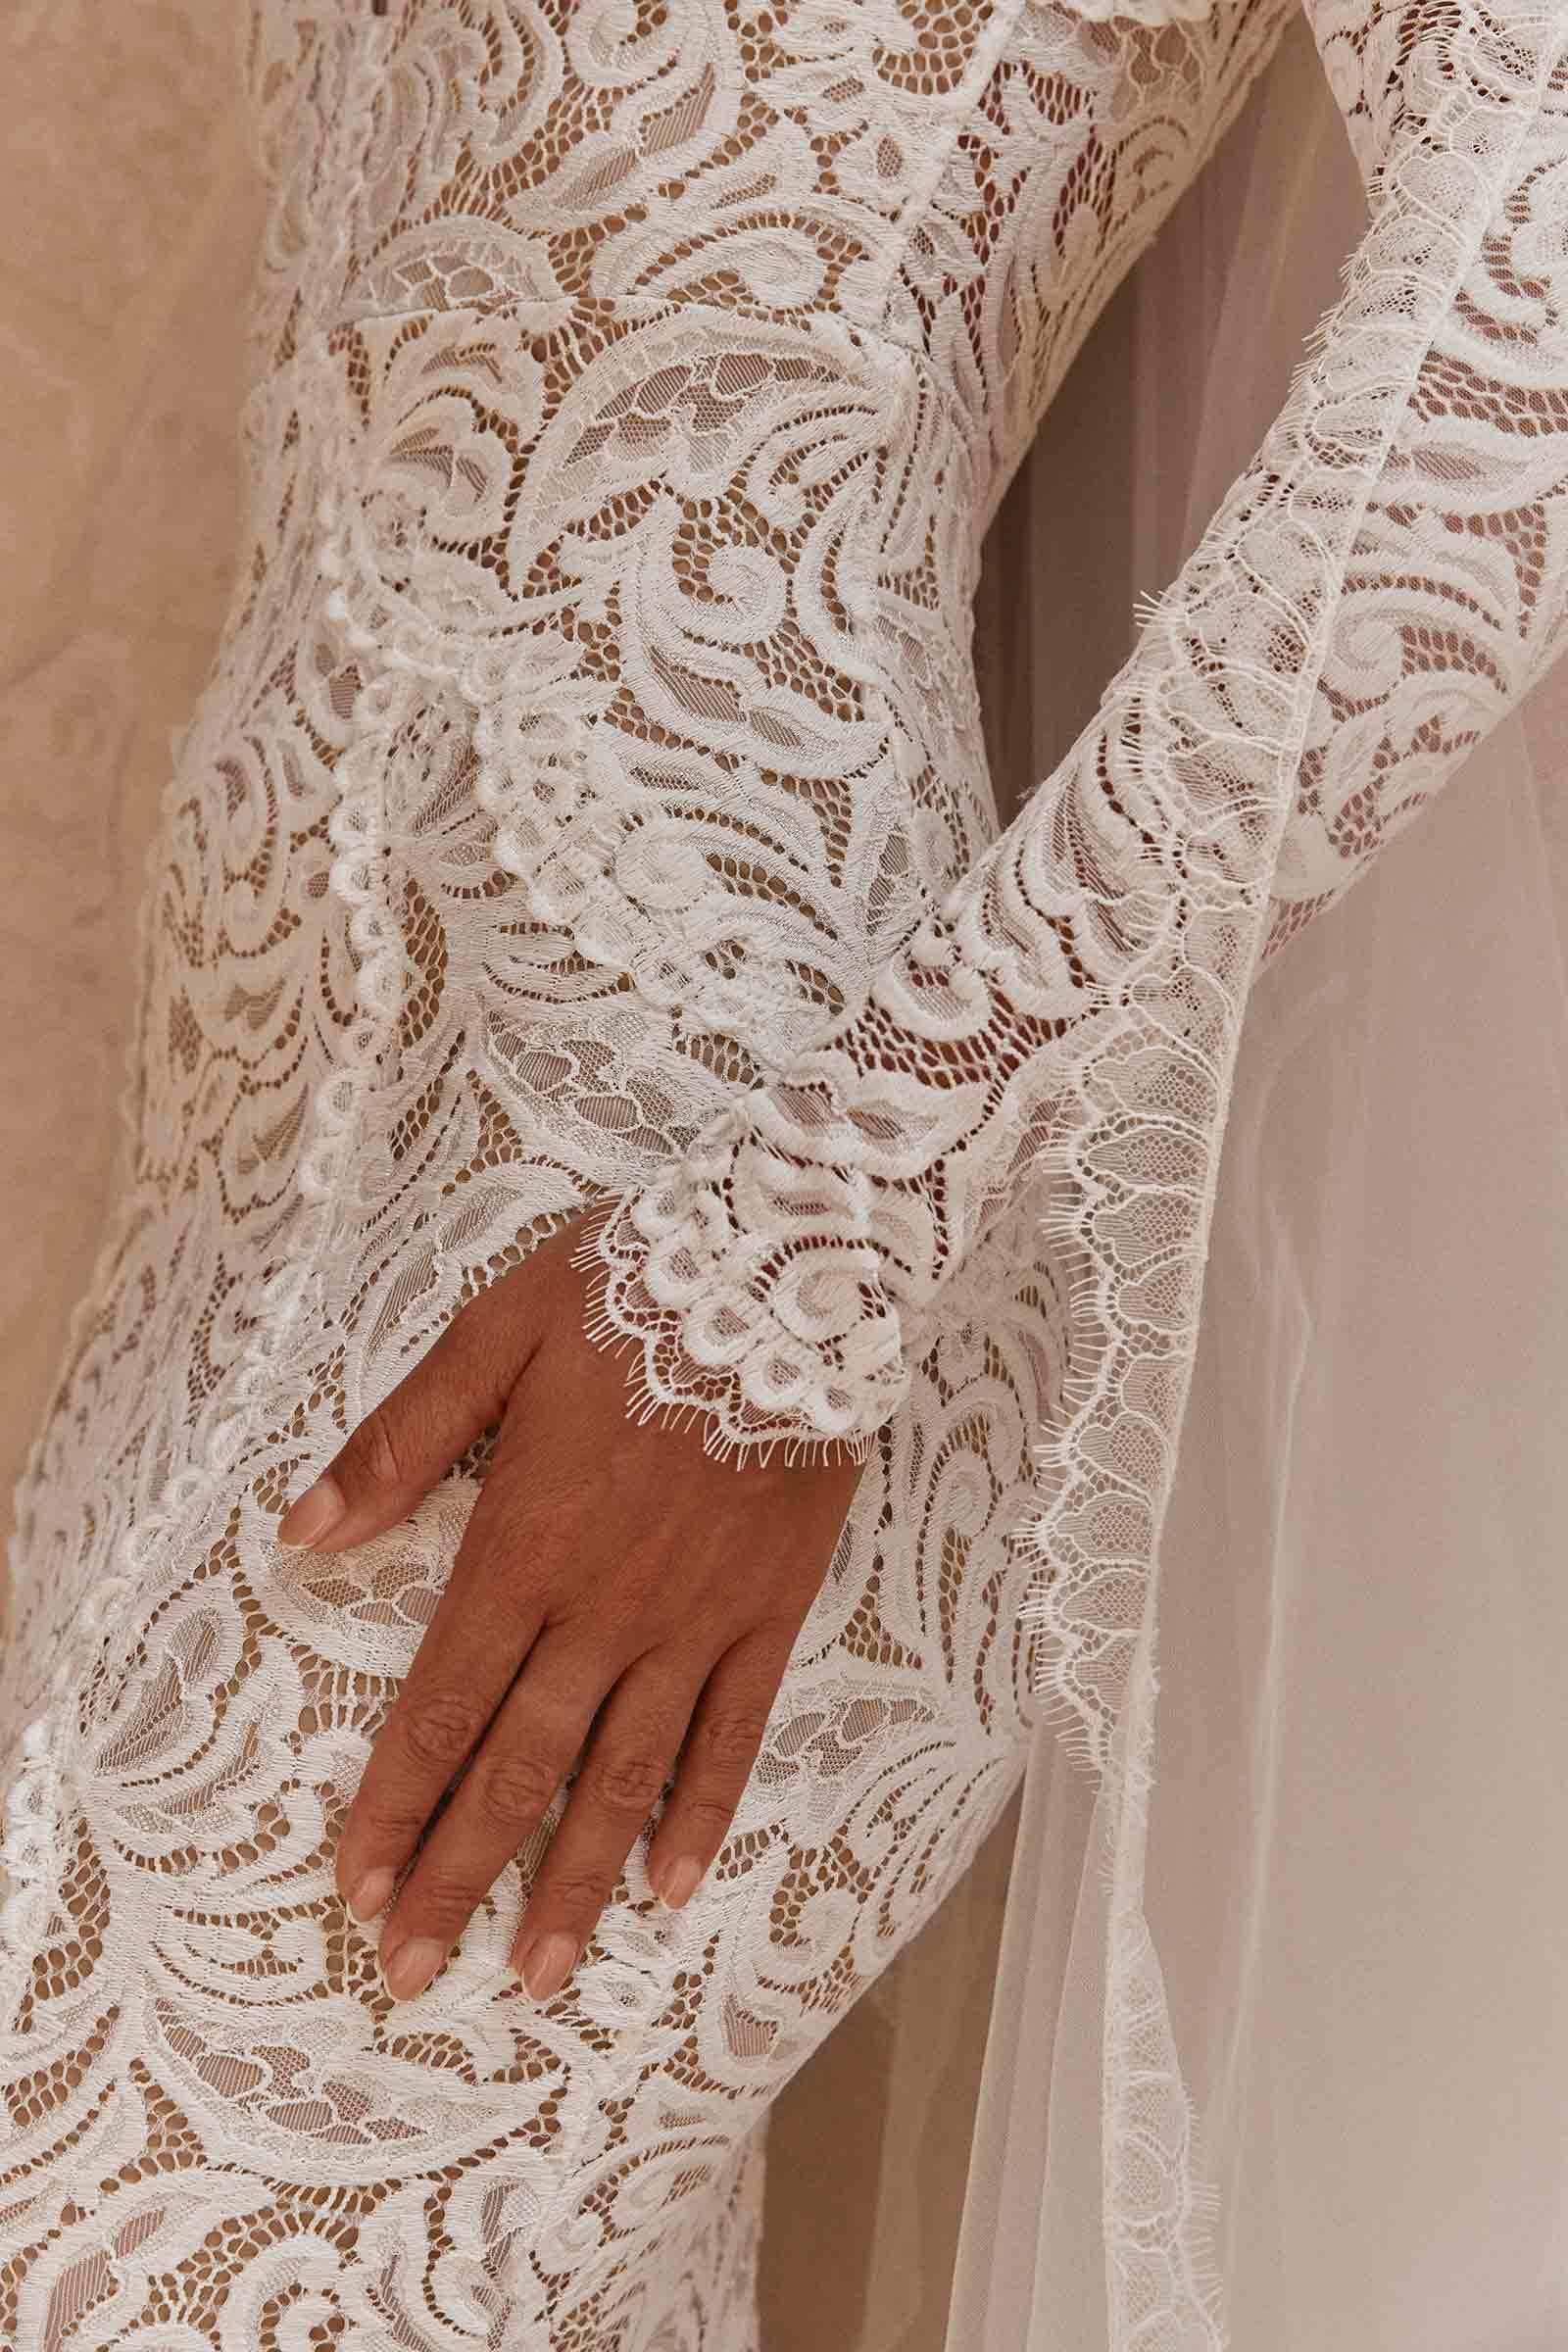 Olive, Lace Wedding Dress